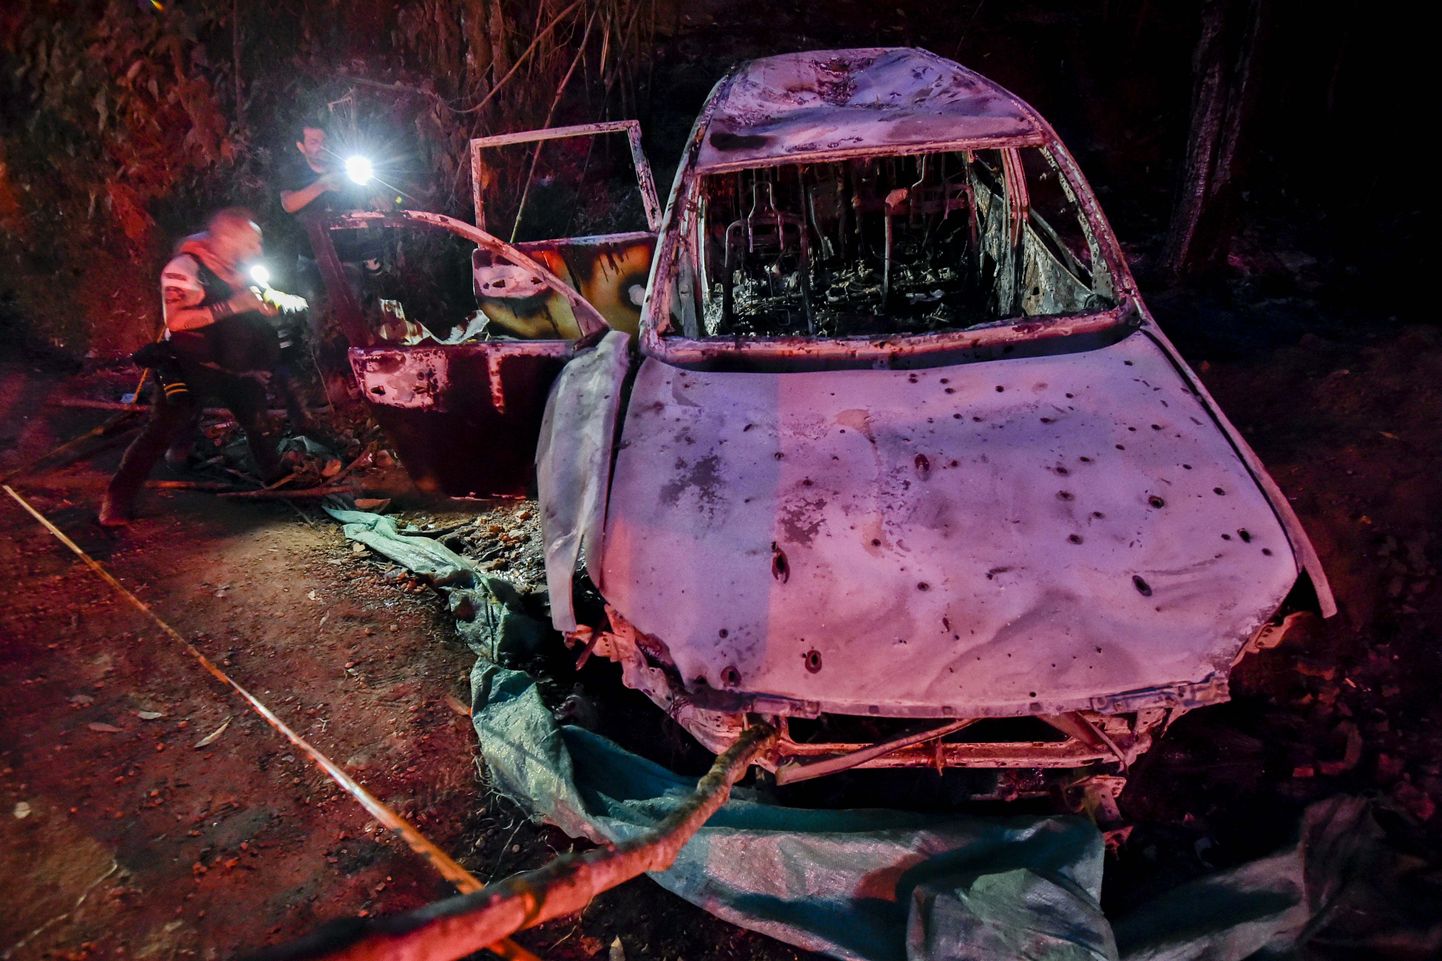 Foto põlenud soomustatud autost Colombias Cauca departemangus, kus pühapäeval korraldatud rünnakus sai teiste seas surma Suáreze linnapeakandidaat Karina Garcia.